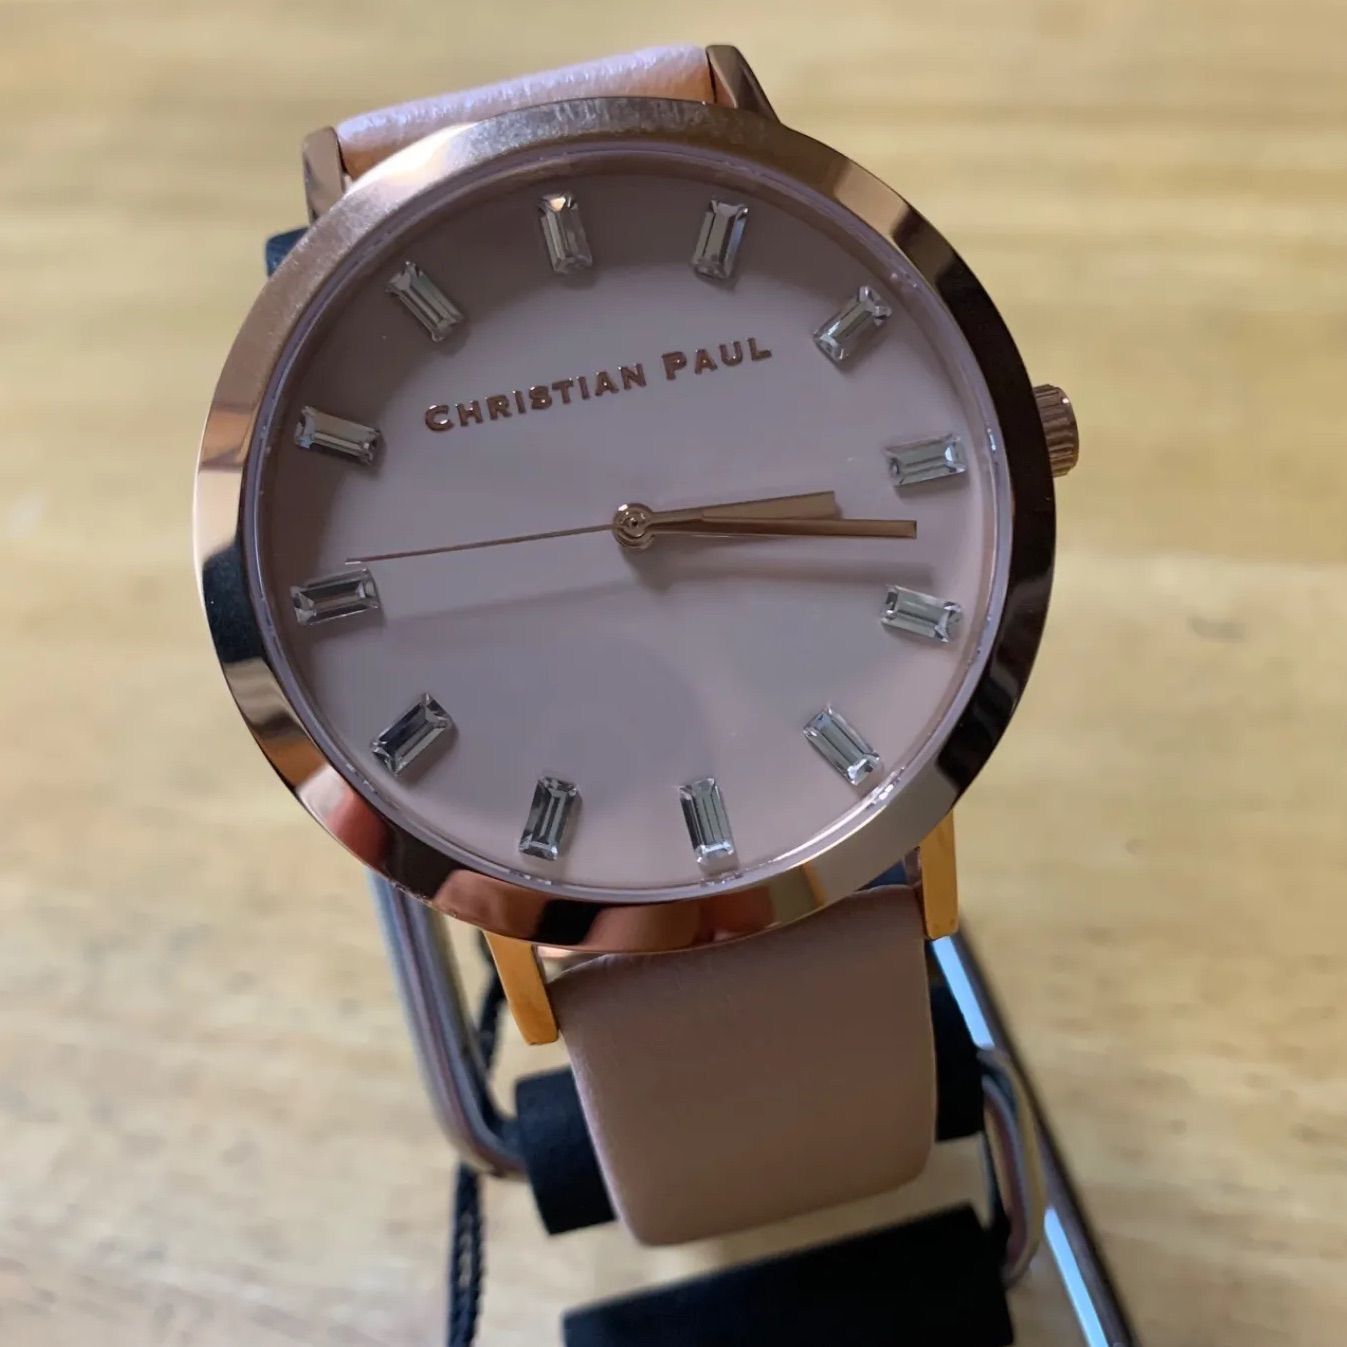 【新品】クリスチャンポール RAW クオーツ 腕時計 RW-04 ブラック